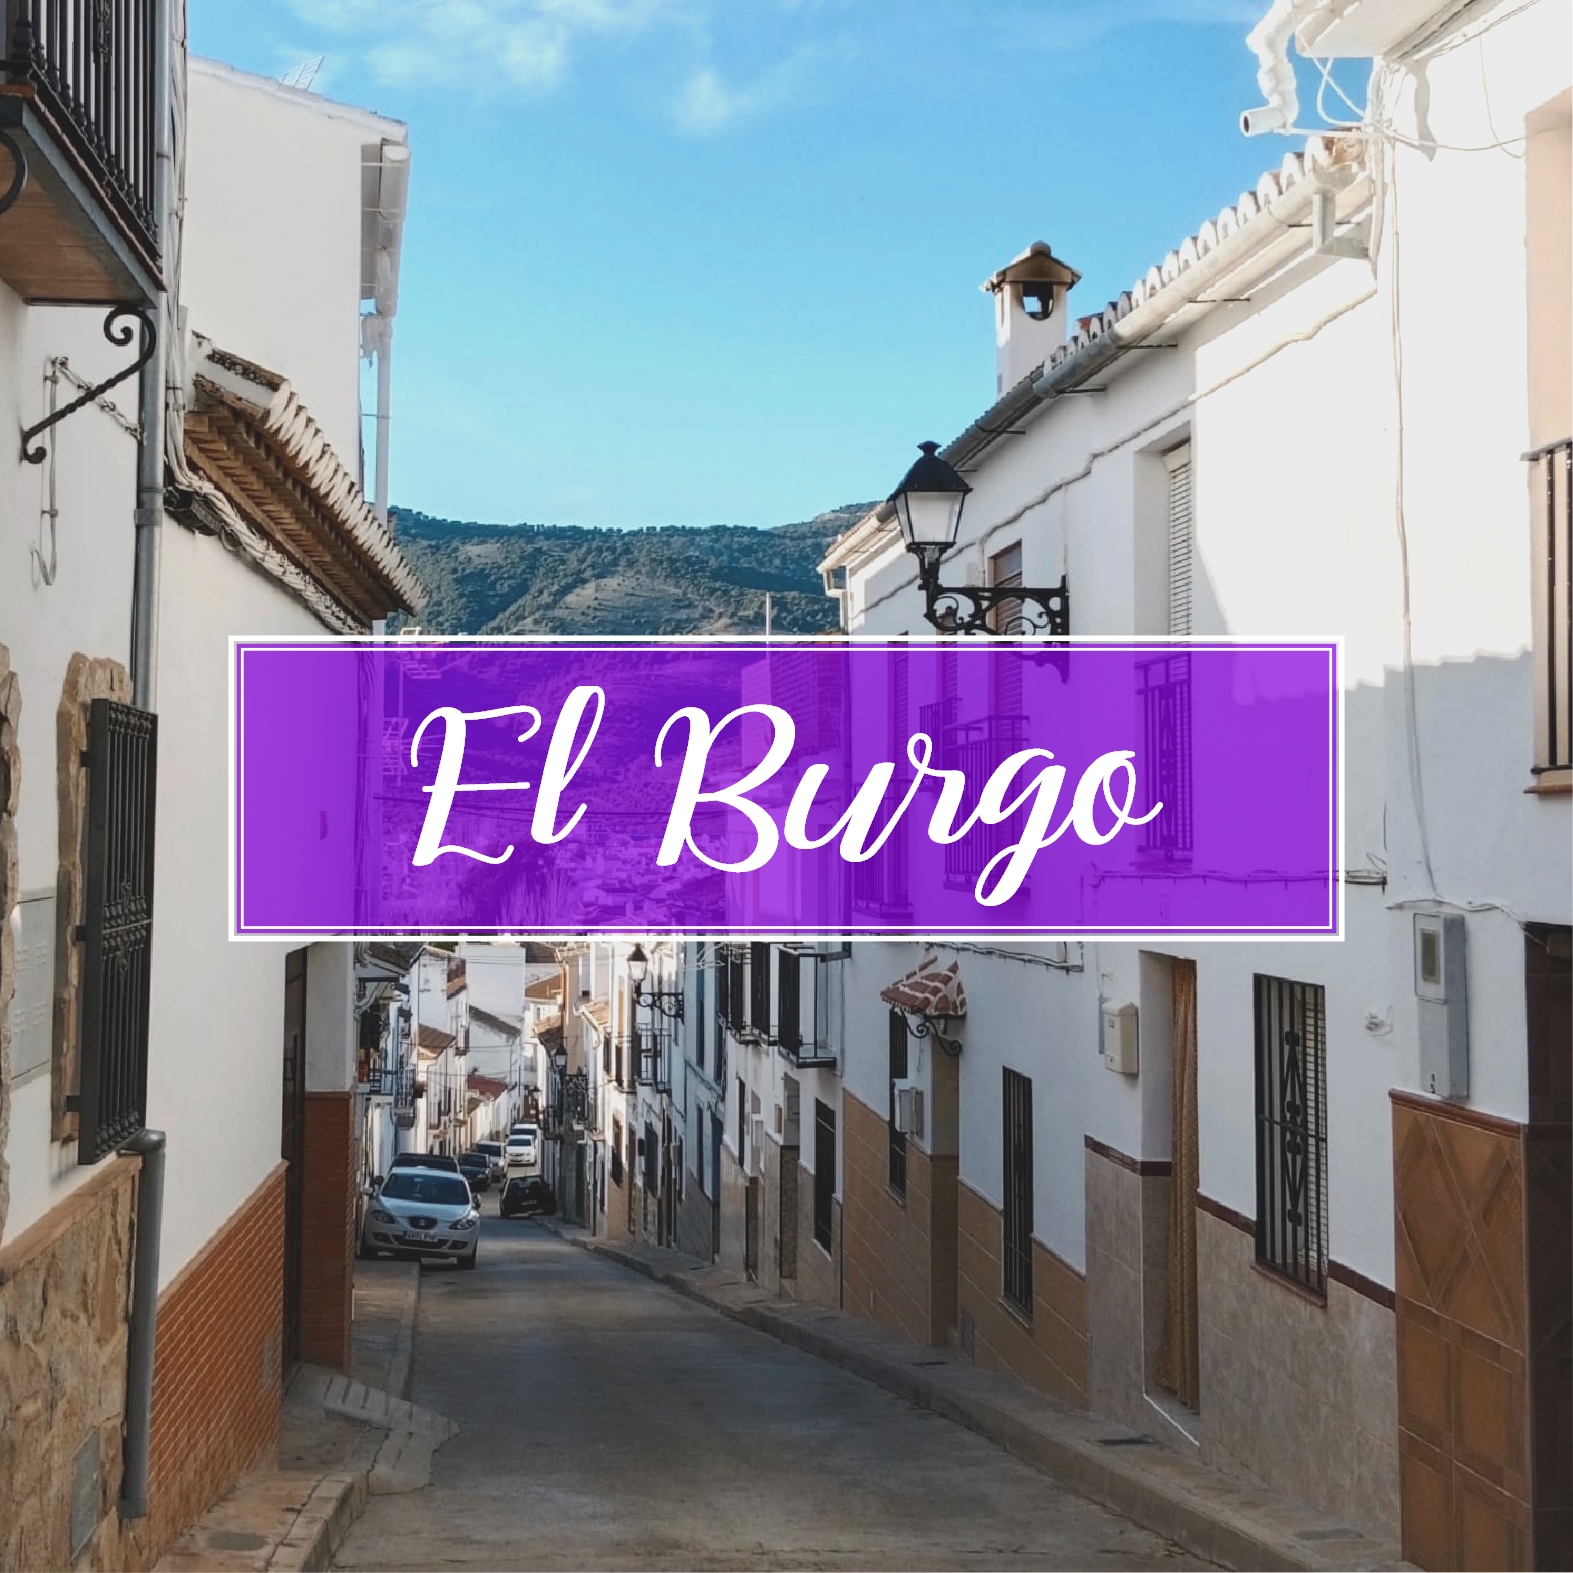 El Burgo Village Town Malaga